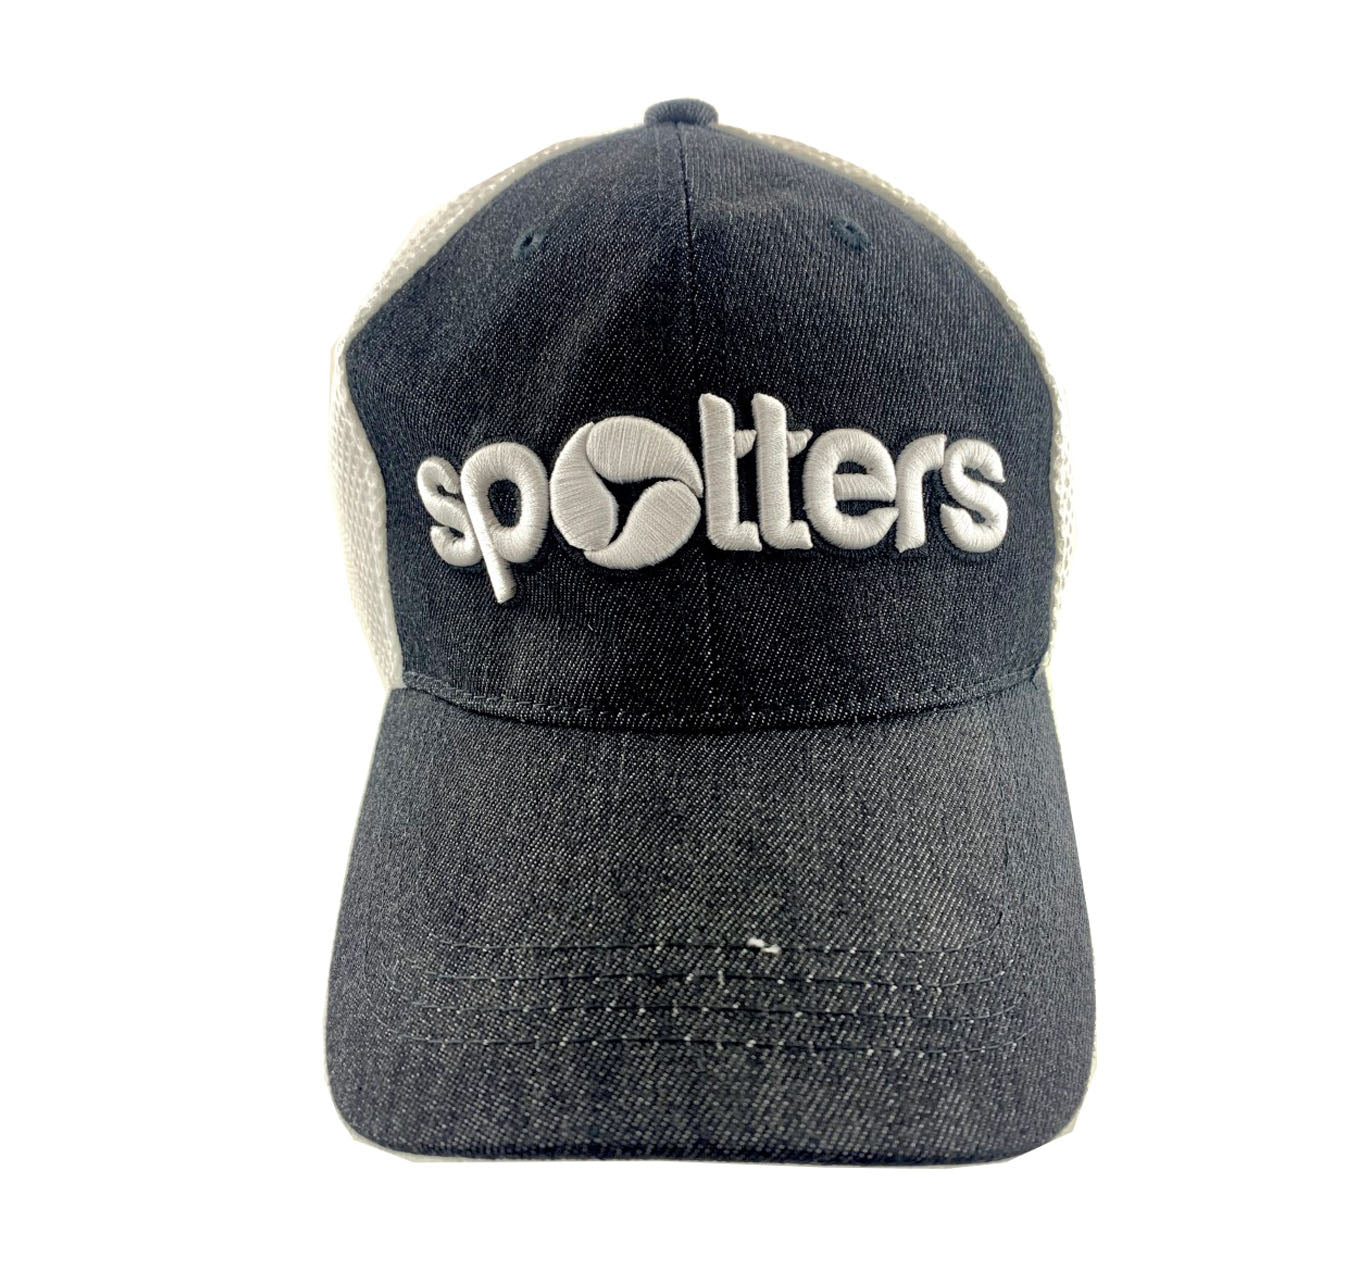 Spotter Marle Black Cap